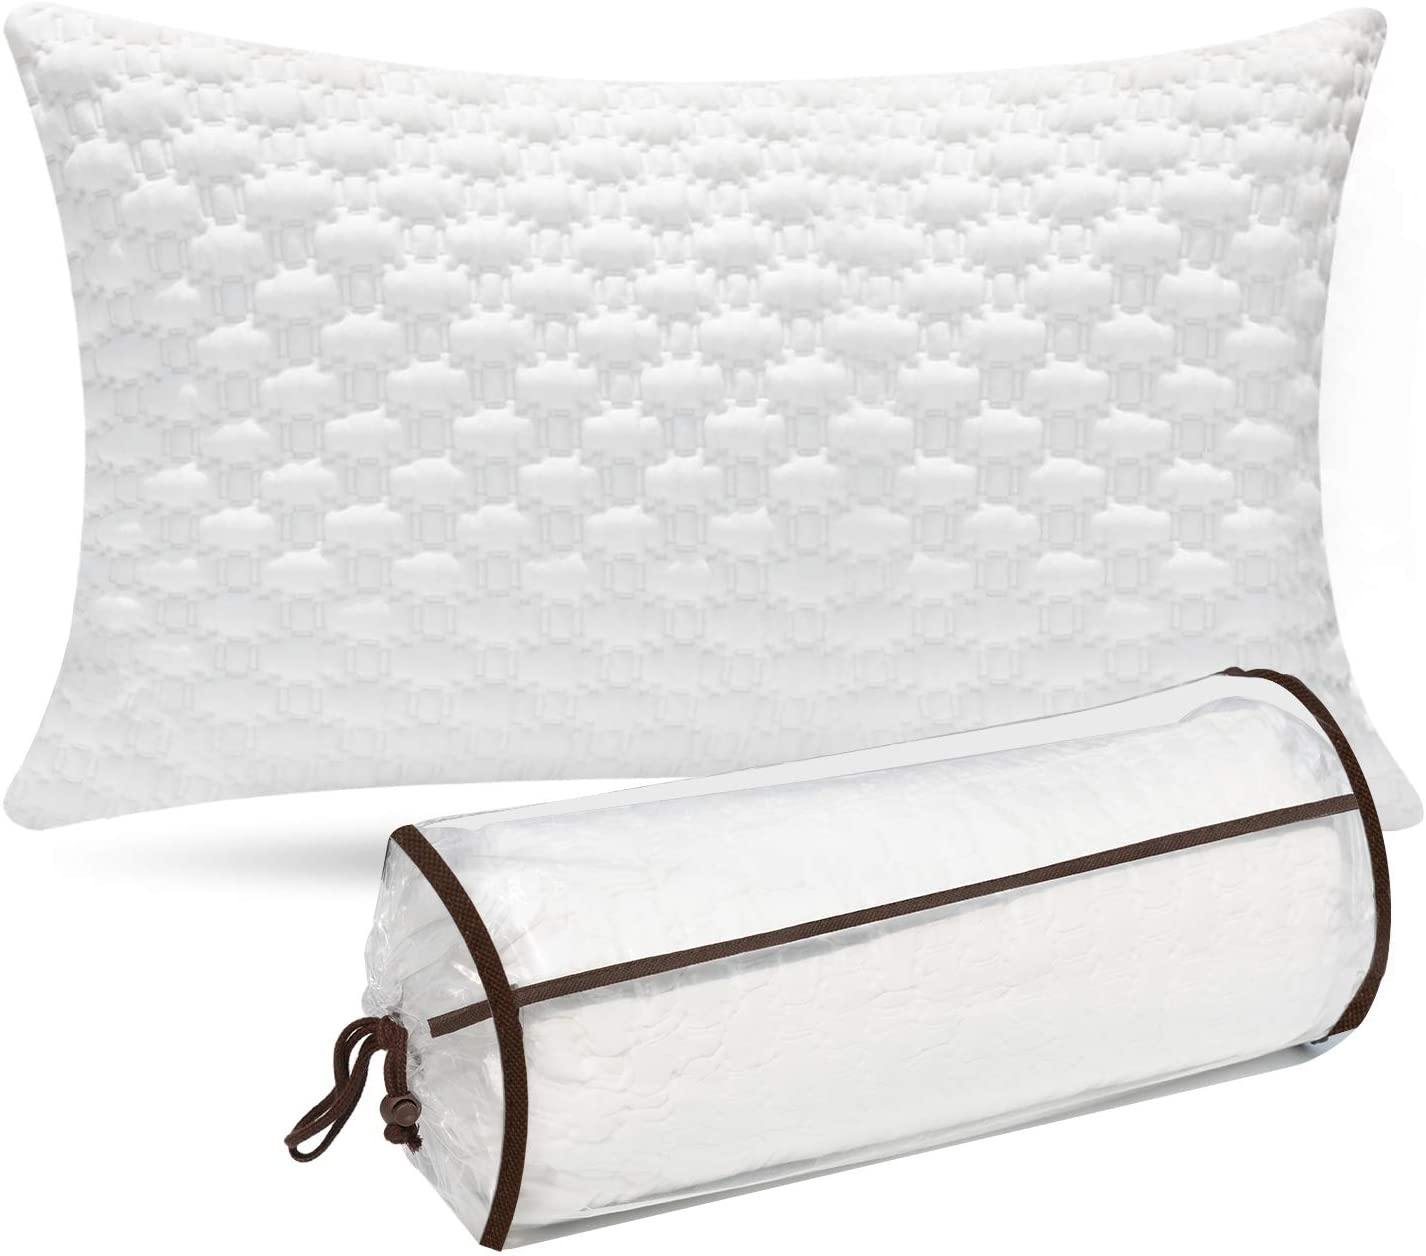 Akarise Shredded Memory Foam Pillow – White, Queen